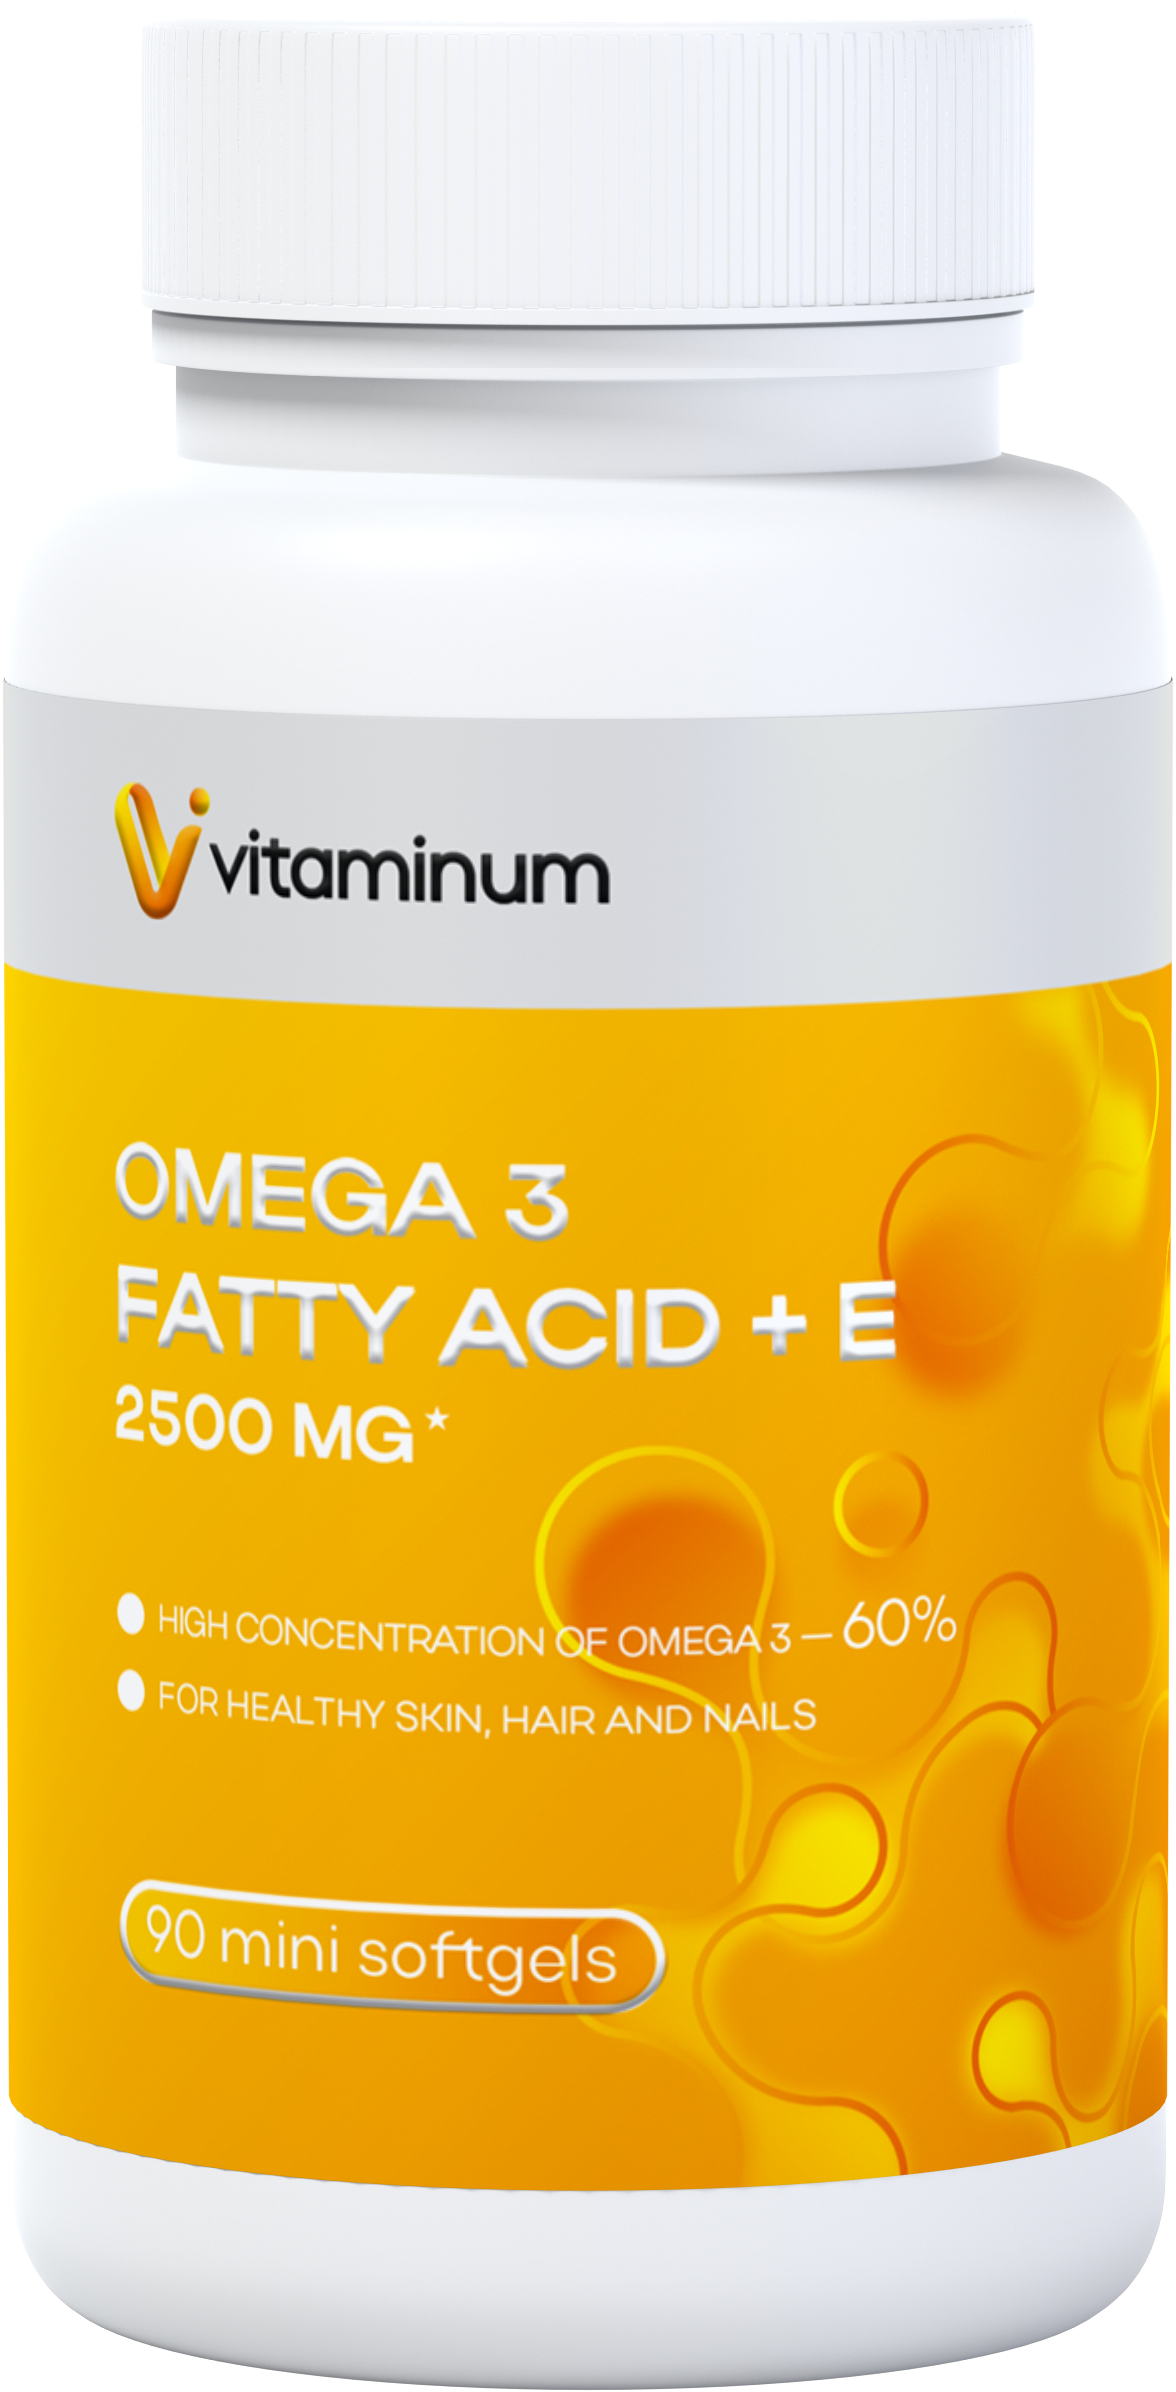  Vitaminum ОМЕГА 3 60% + витамин Е (2500 MG*) 90 капсул 700 мг   в Северобайкальске